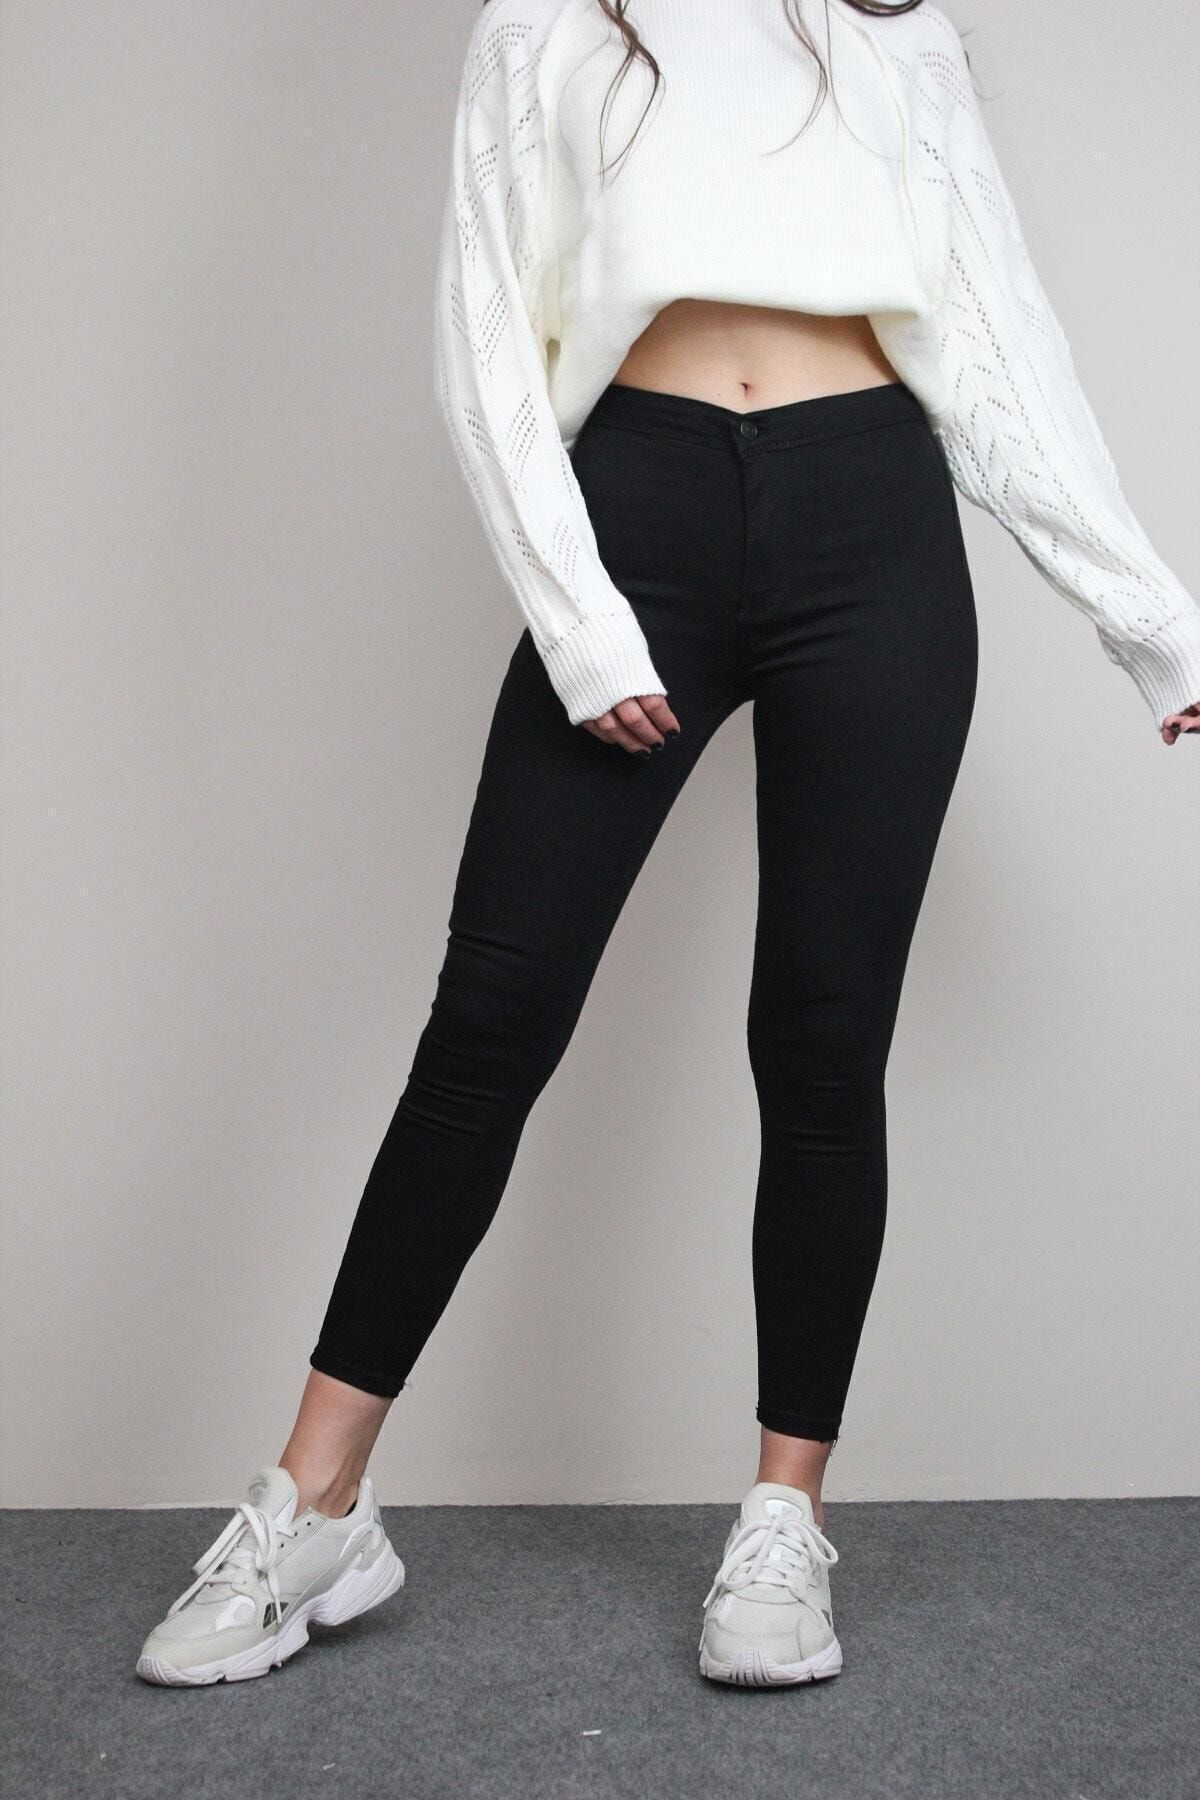 VEGA Kadın Siyah Solmayan Yüksel Bel Likralı Toparlayıcı Skinny Jeans Pantalon